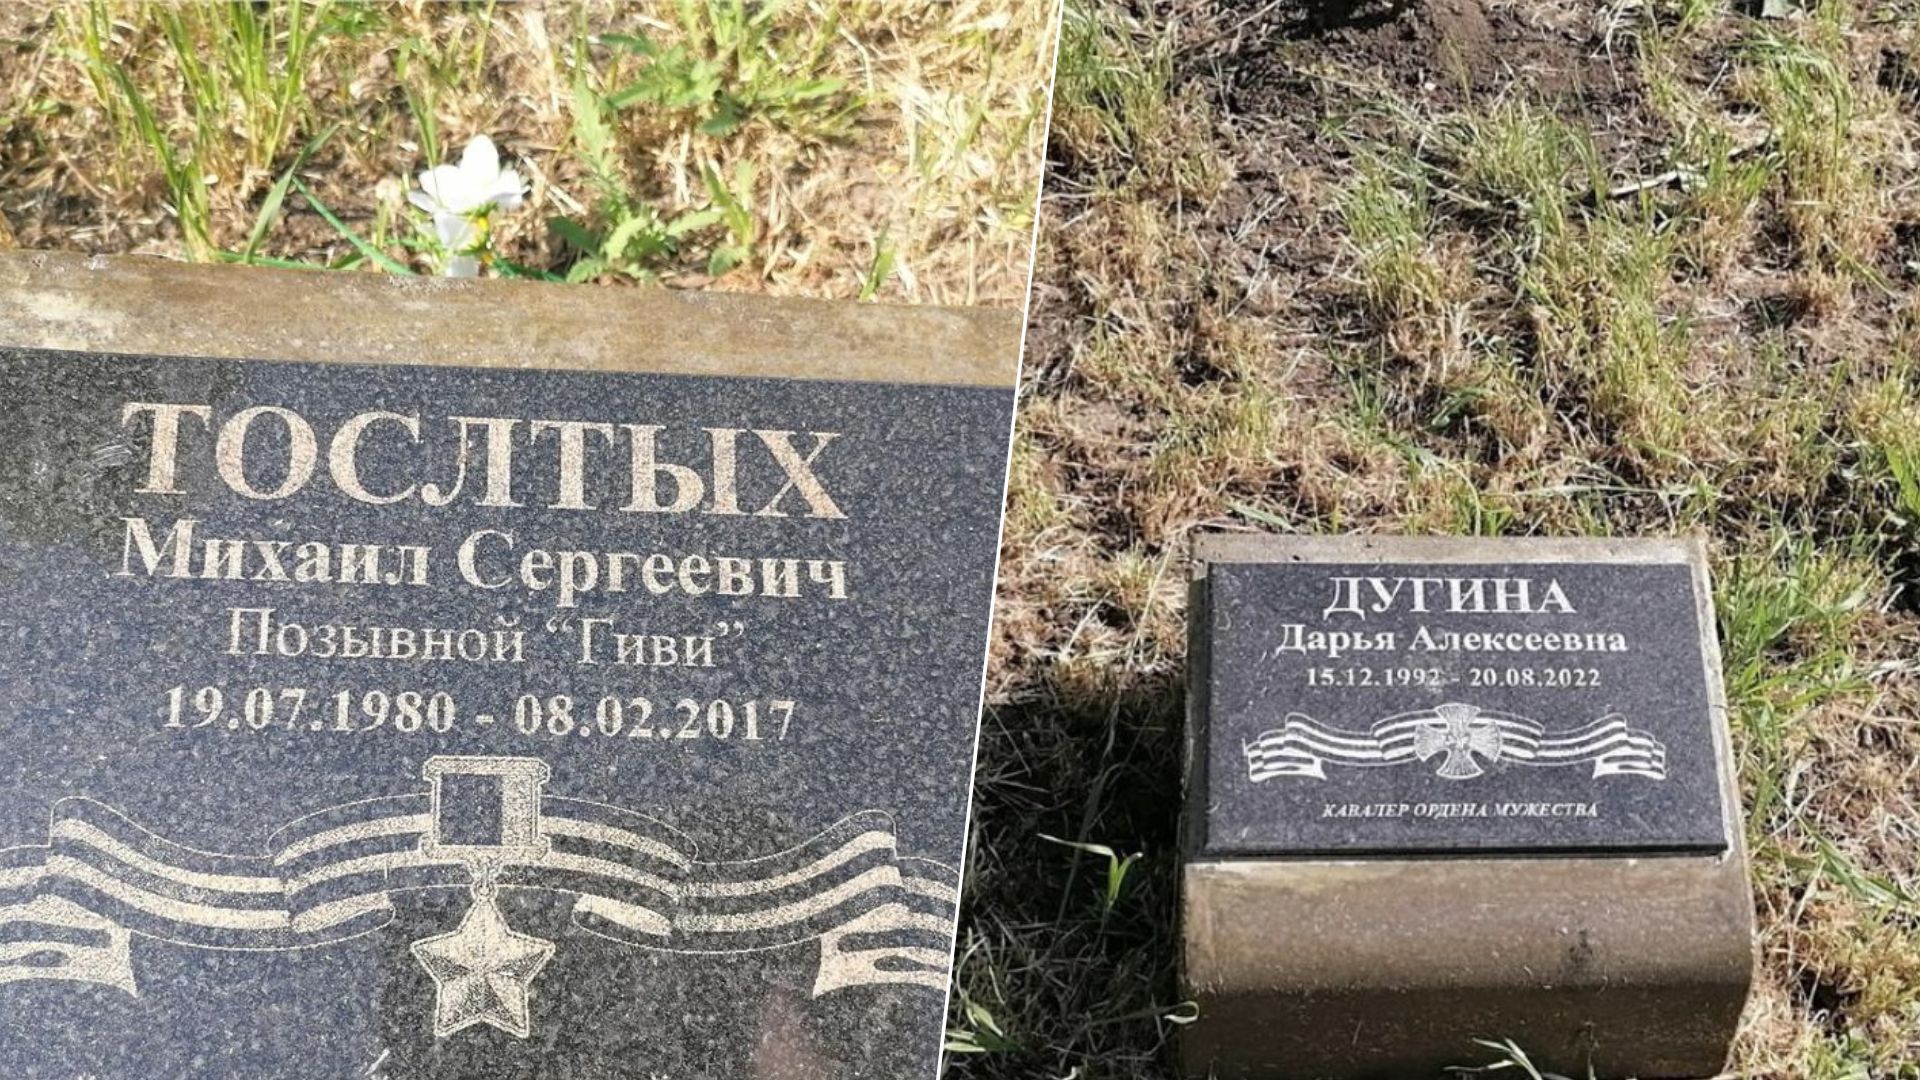 Дугина и Гиви - в Крыму оконфузились с мемориальными табличками - 24 Канал